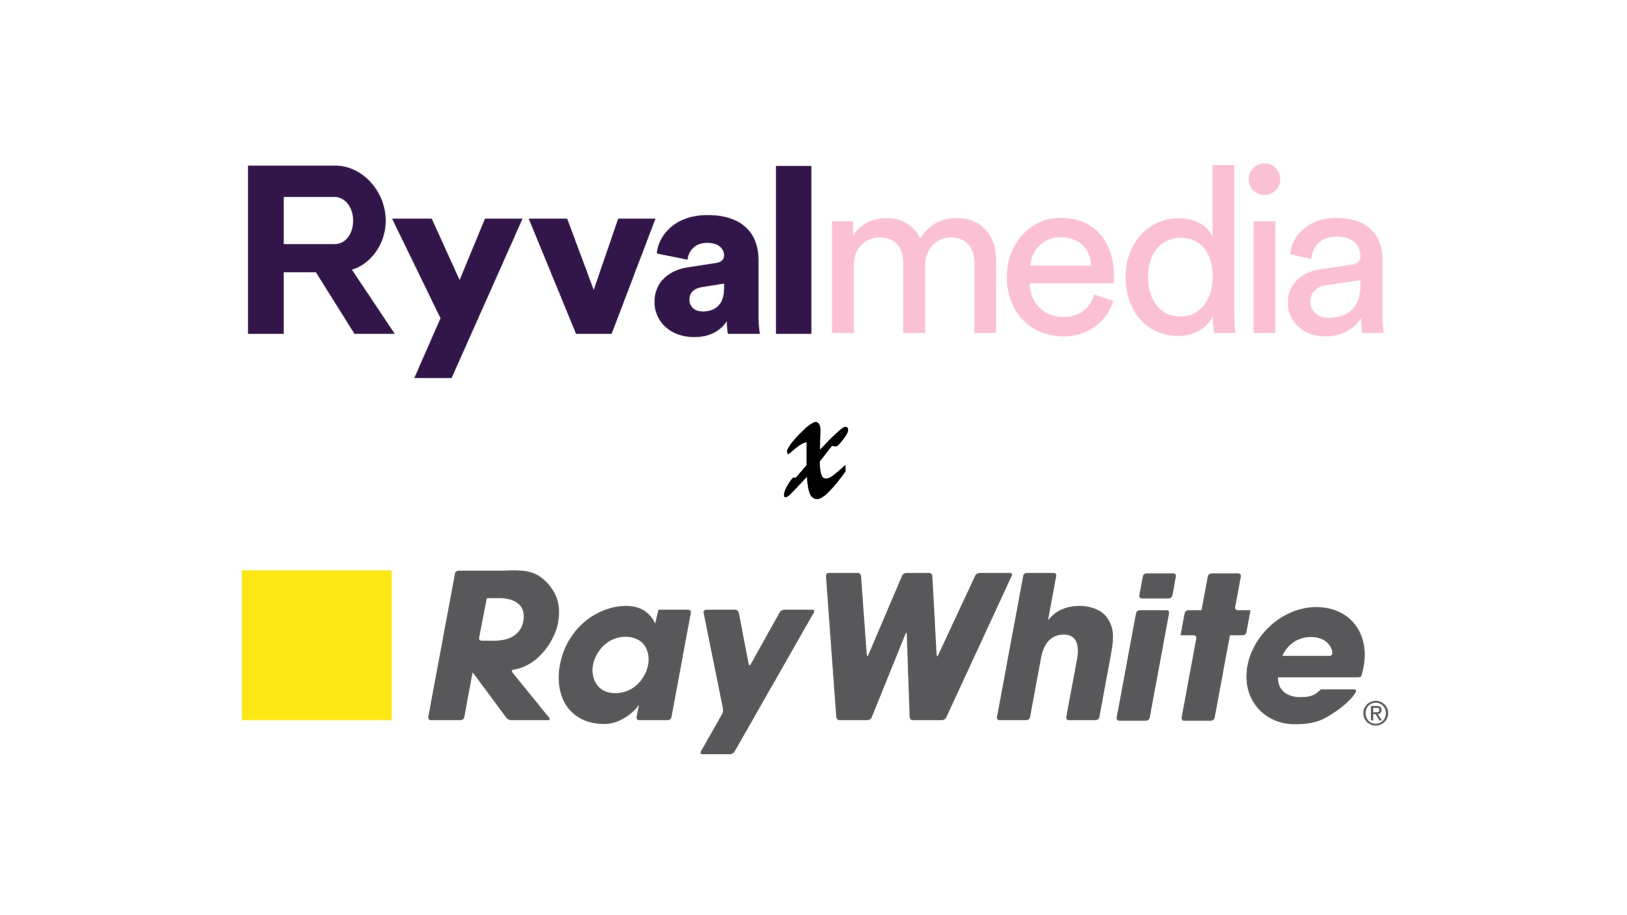 Ryvalmedia and Ray White